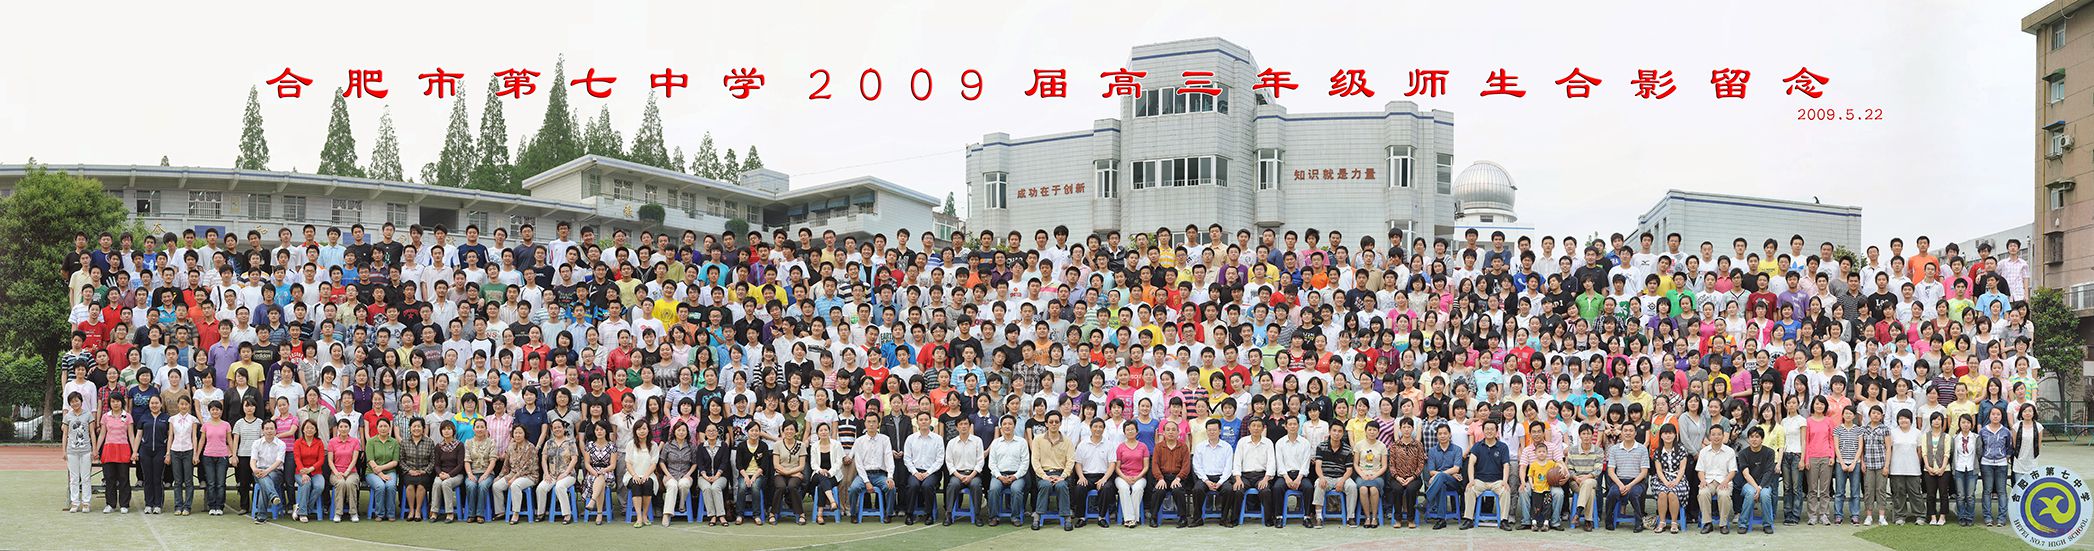 2009届合肥七中大合影.jpg